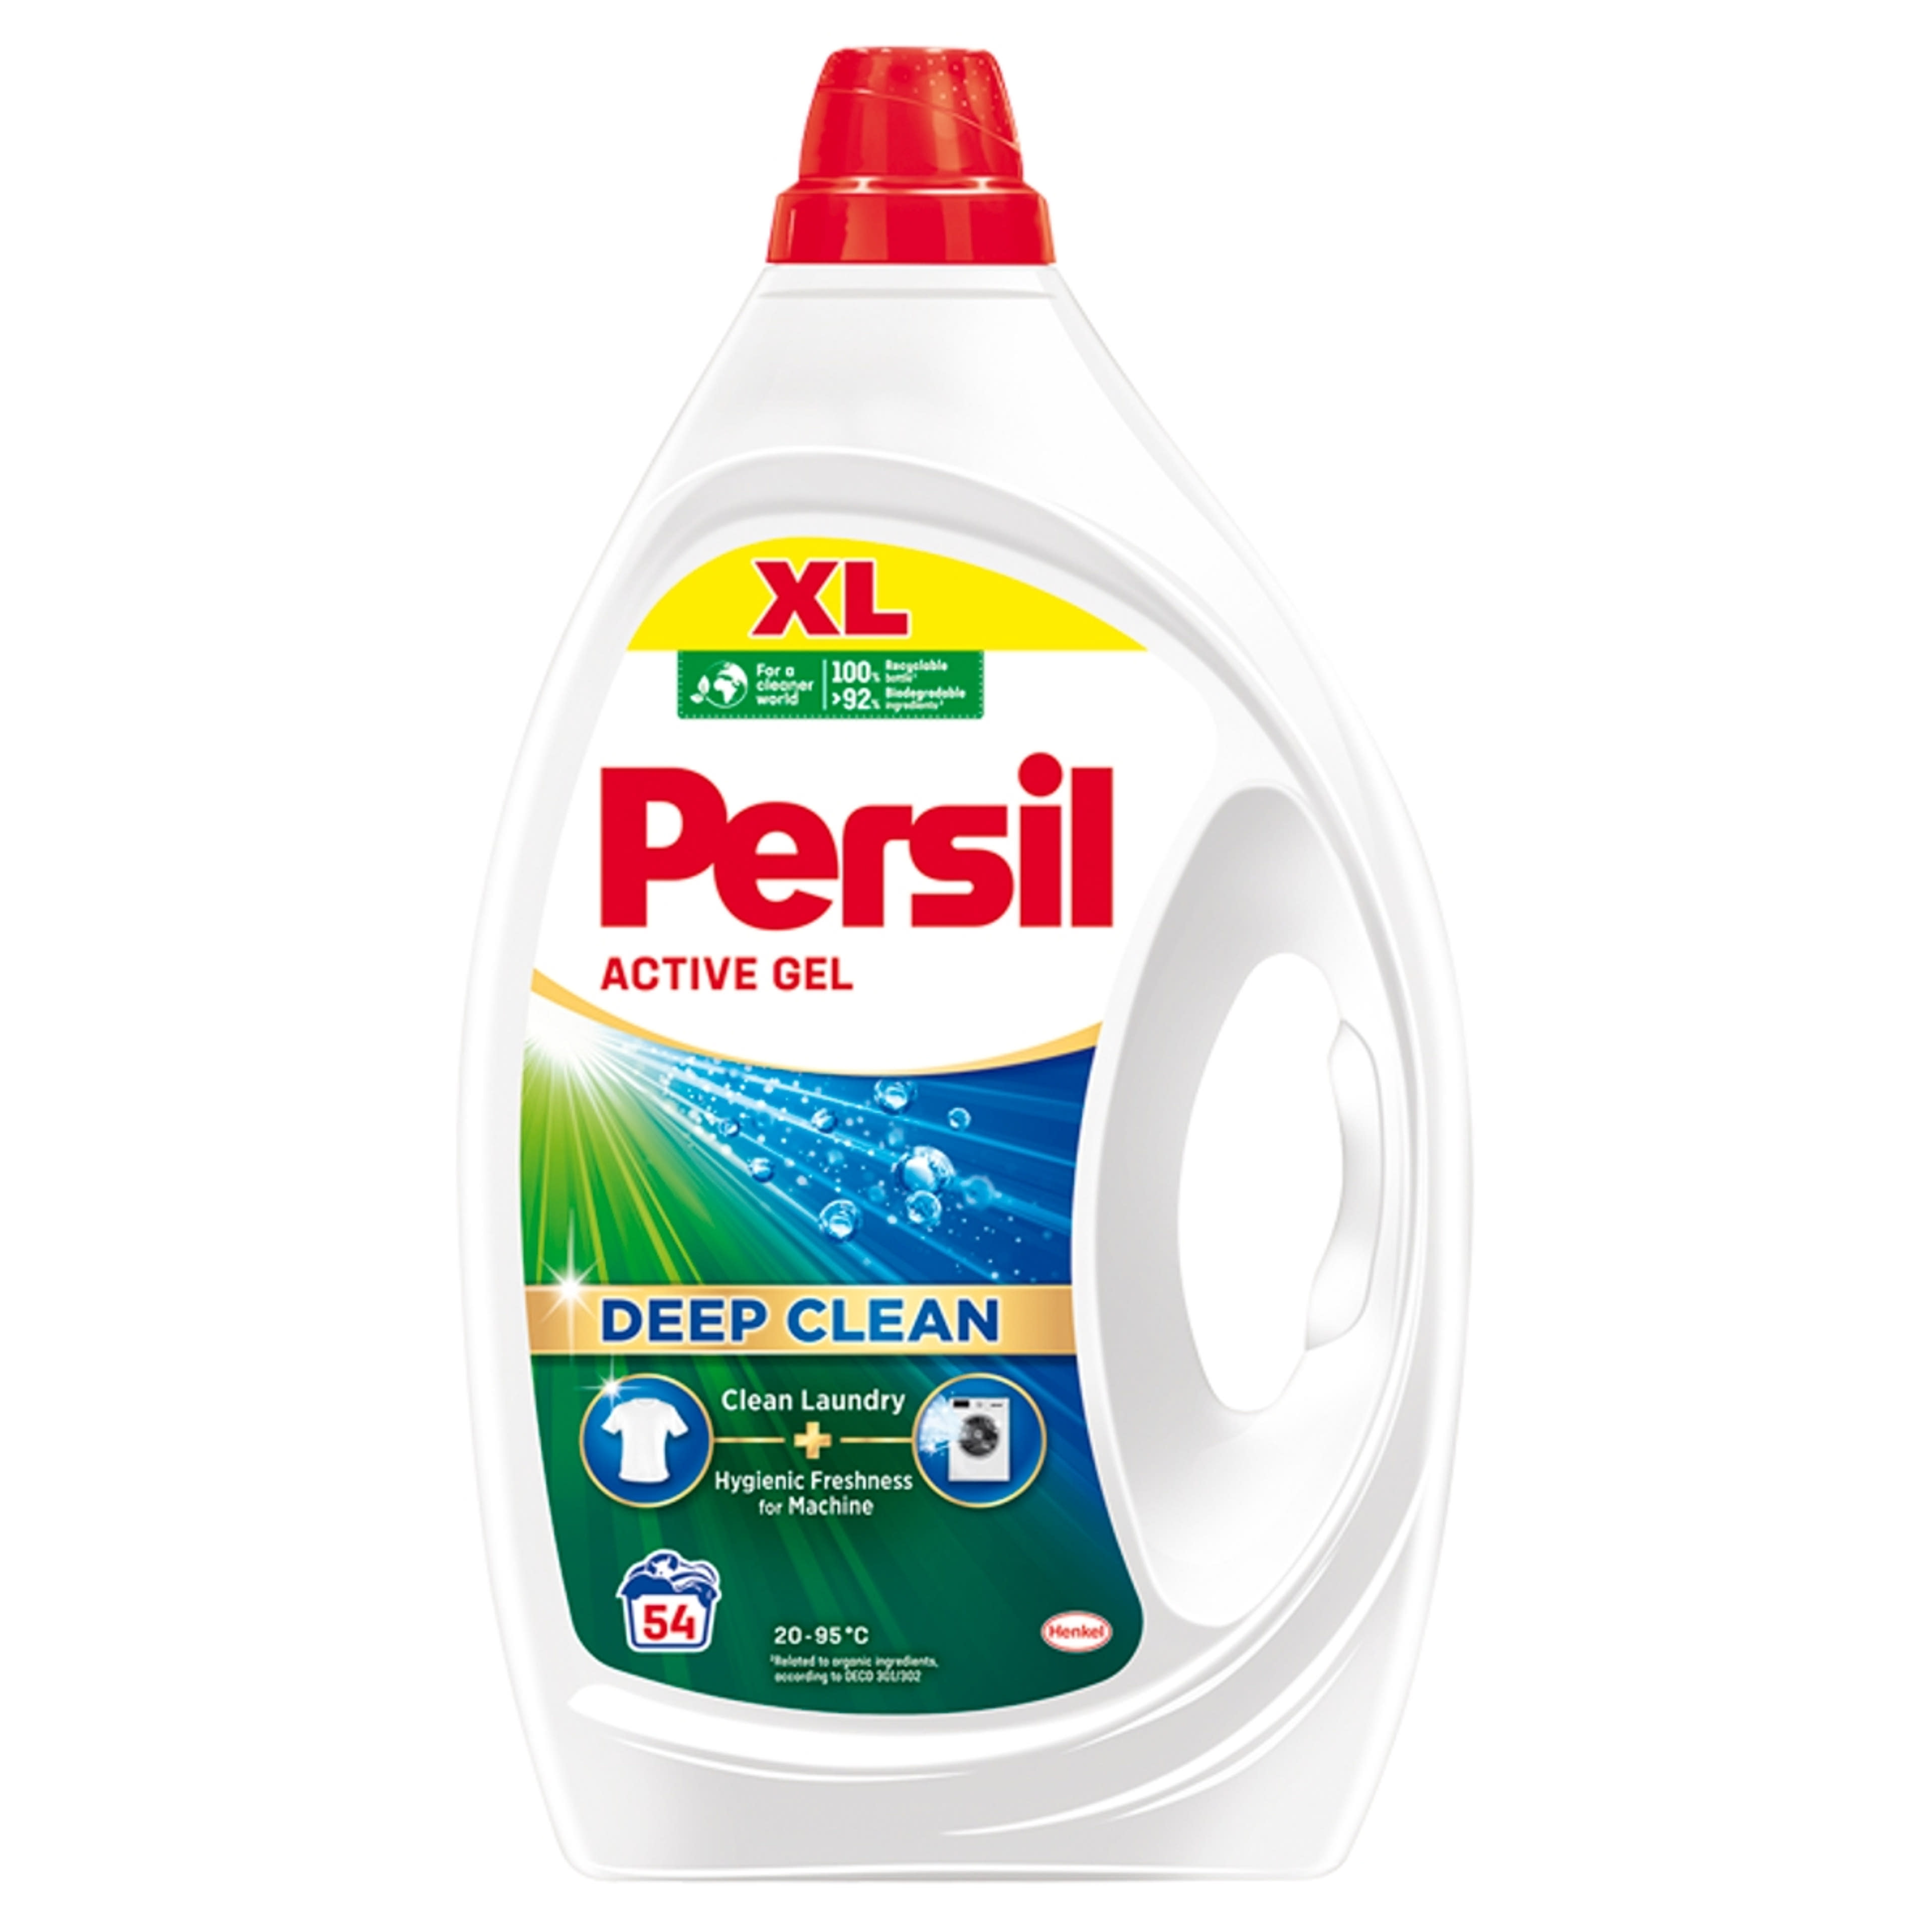 Persil Active Gel mosószer 54 mosás - 2430 ml